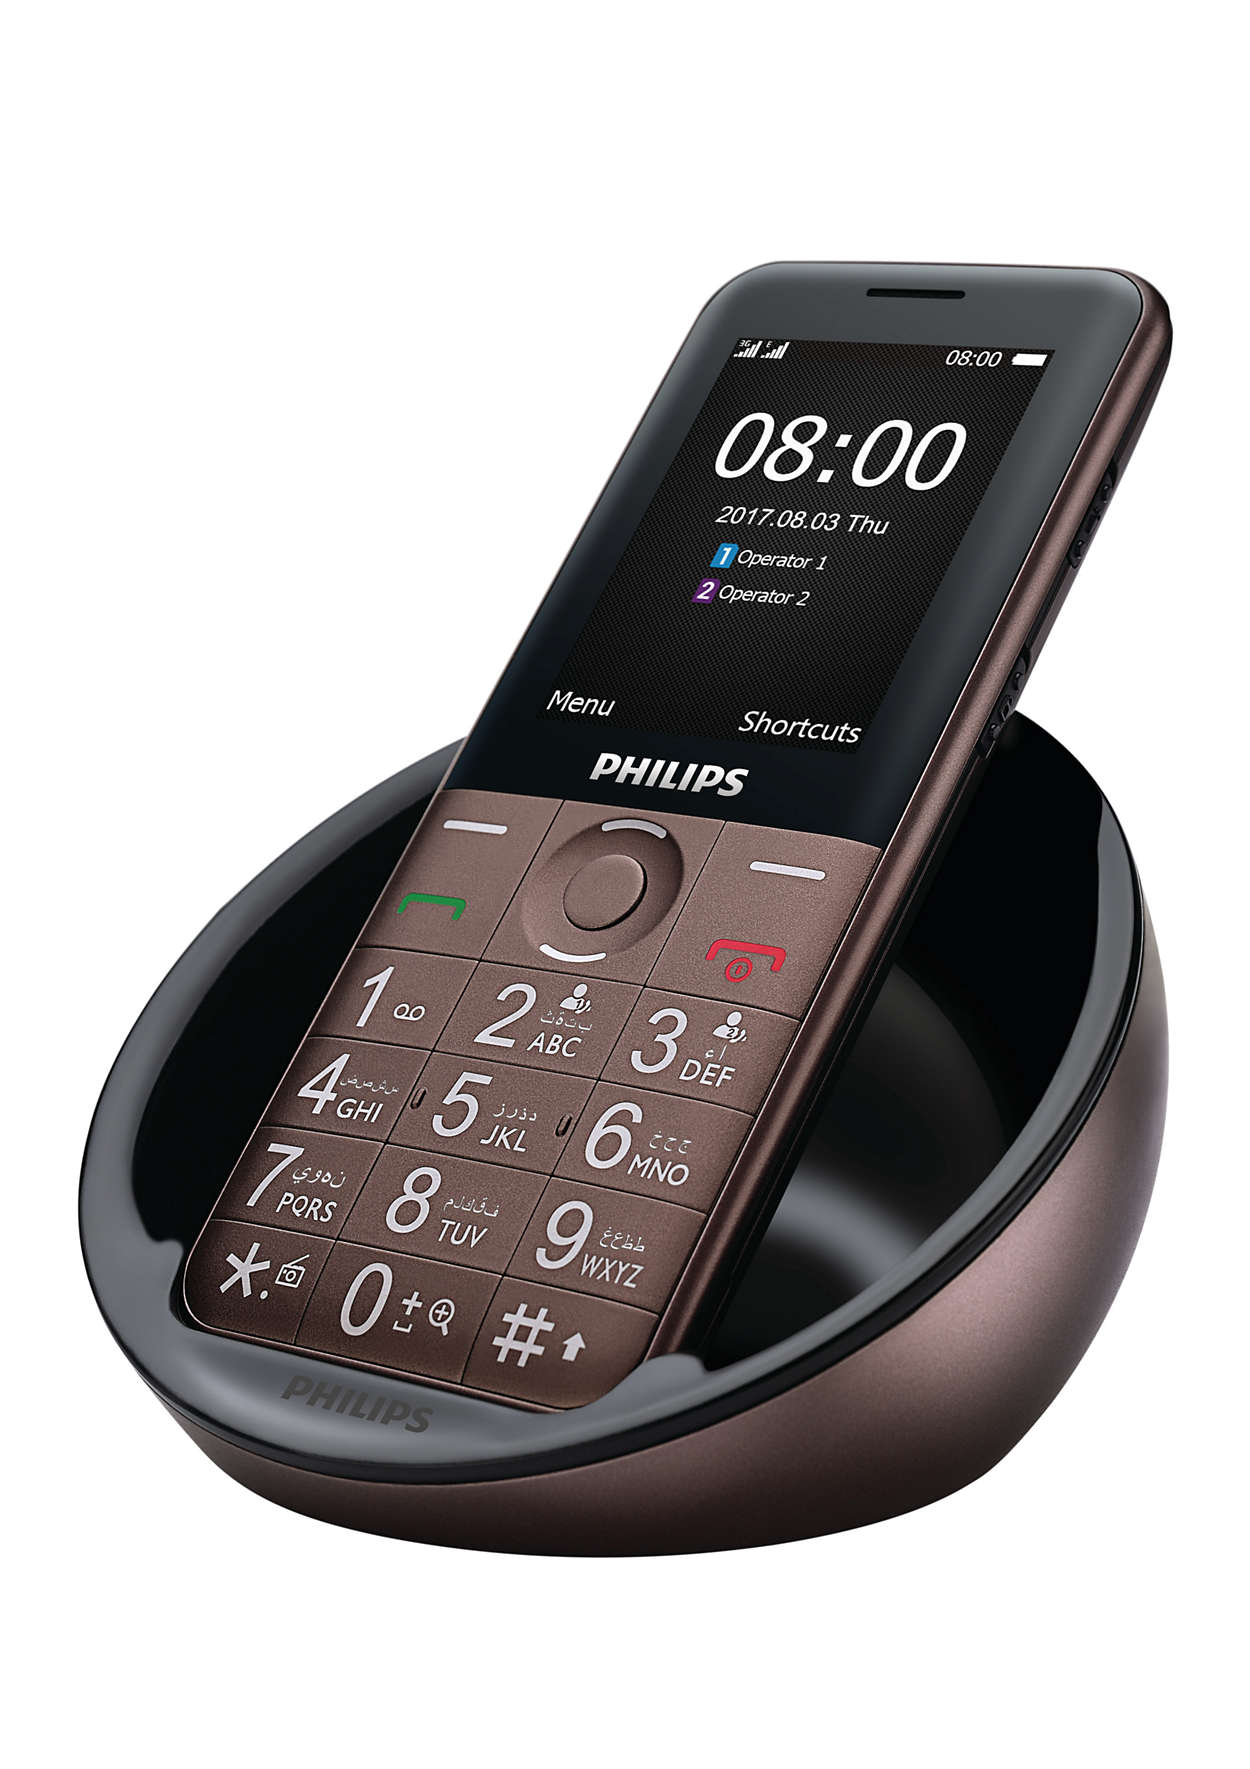 Цена телефона филипс кнопочный. Philips e331. Филипс ксениум кнопочный с док станцией. Philips Xenium e331. Philips Xenium e2301.